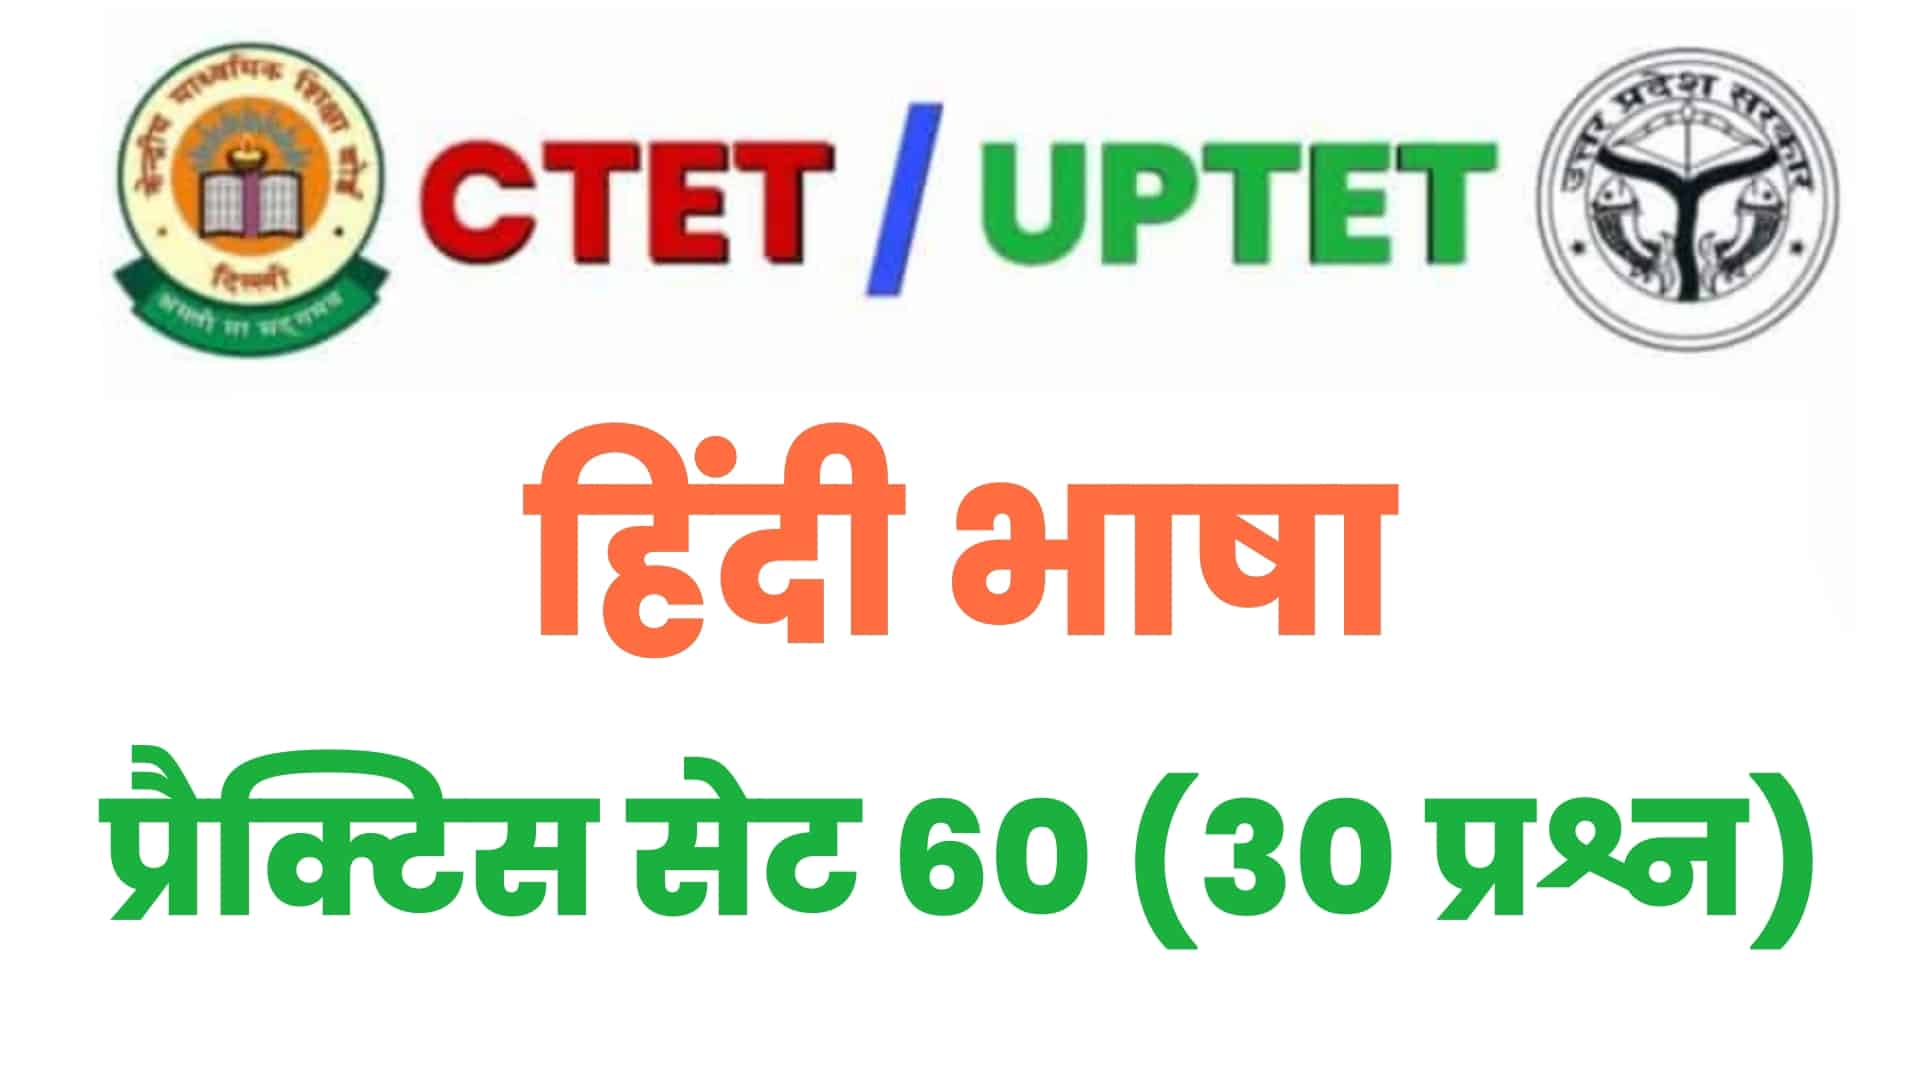 UPTET/CTET  हिंदी भाषा प्रैक्टिस सेट 60 : परीक्षा में शामिल होने से पहले इन 30 महत्वपूर्ण प्रश्नों का करें अध्ययन